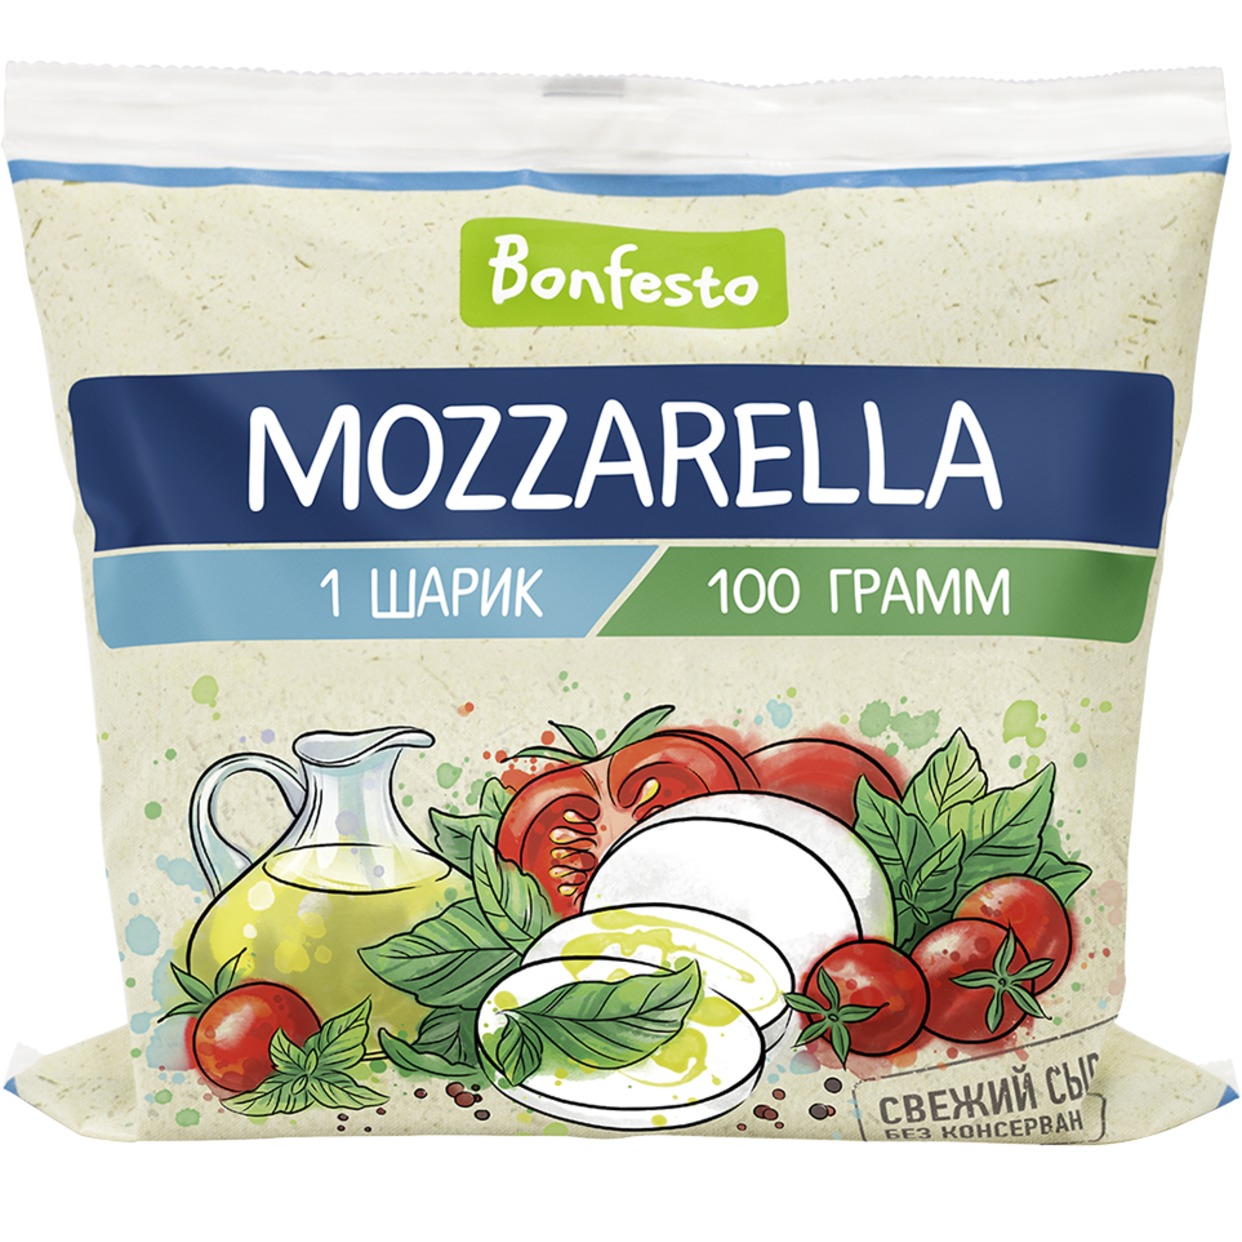 Сыр Моцарелла, Bonfesto, 45%, 100 г по акции в Пятерочке